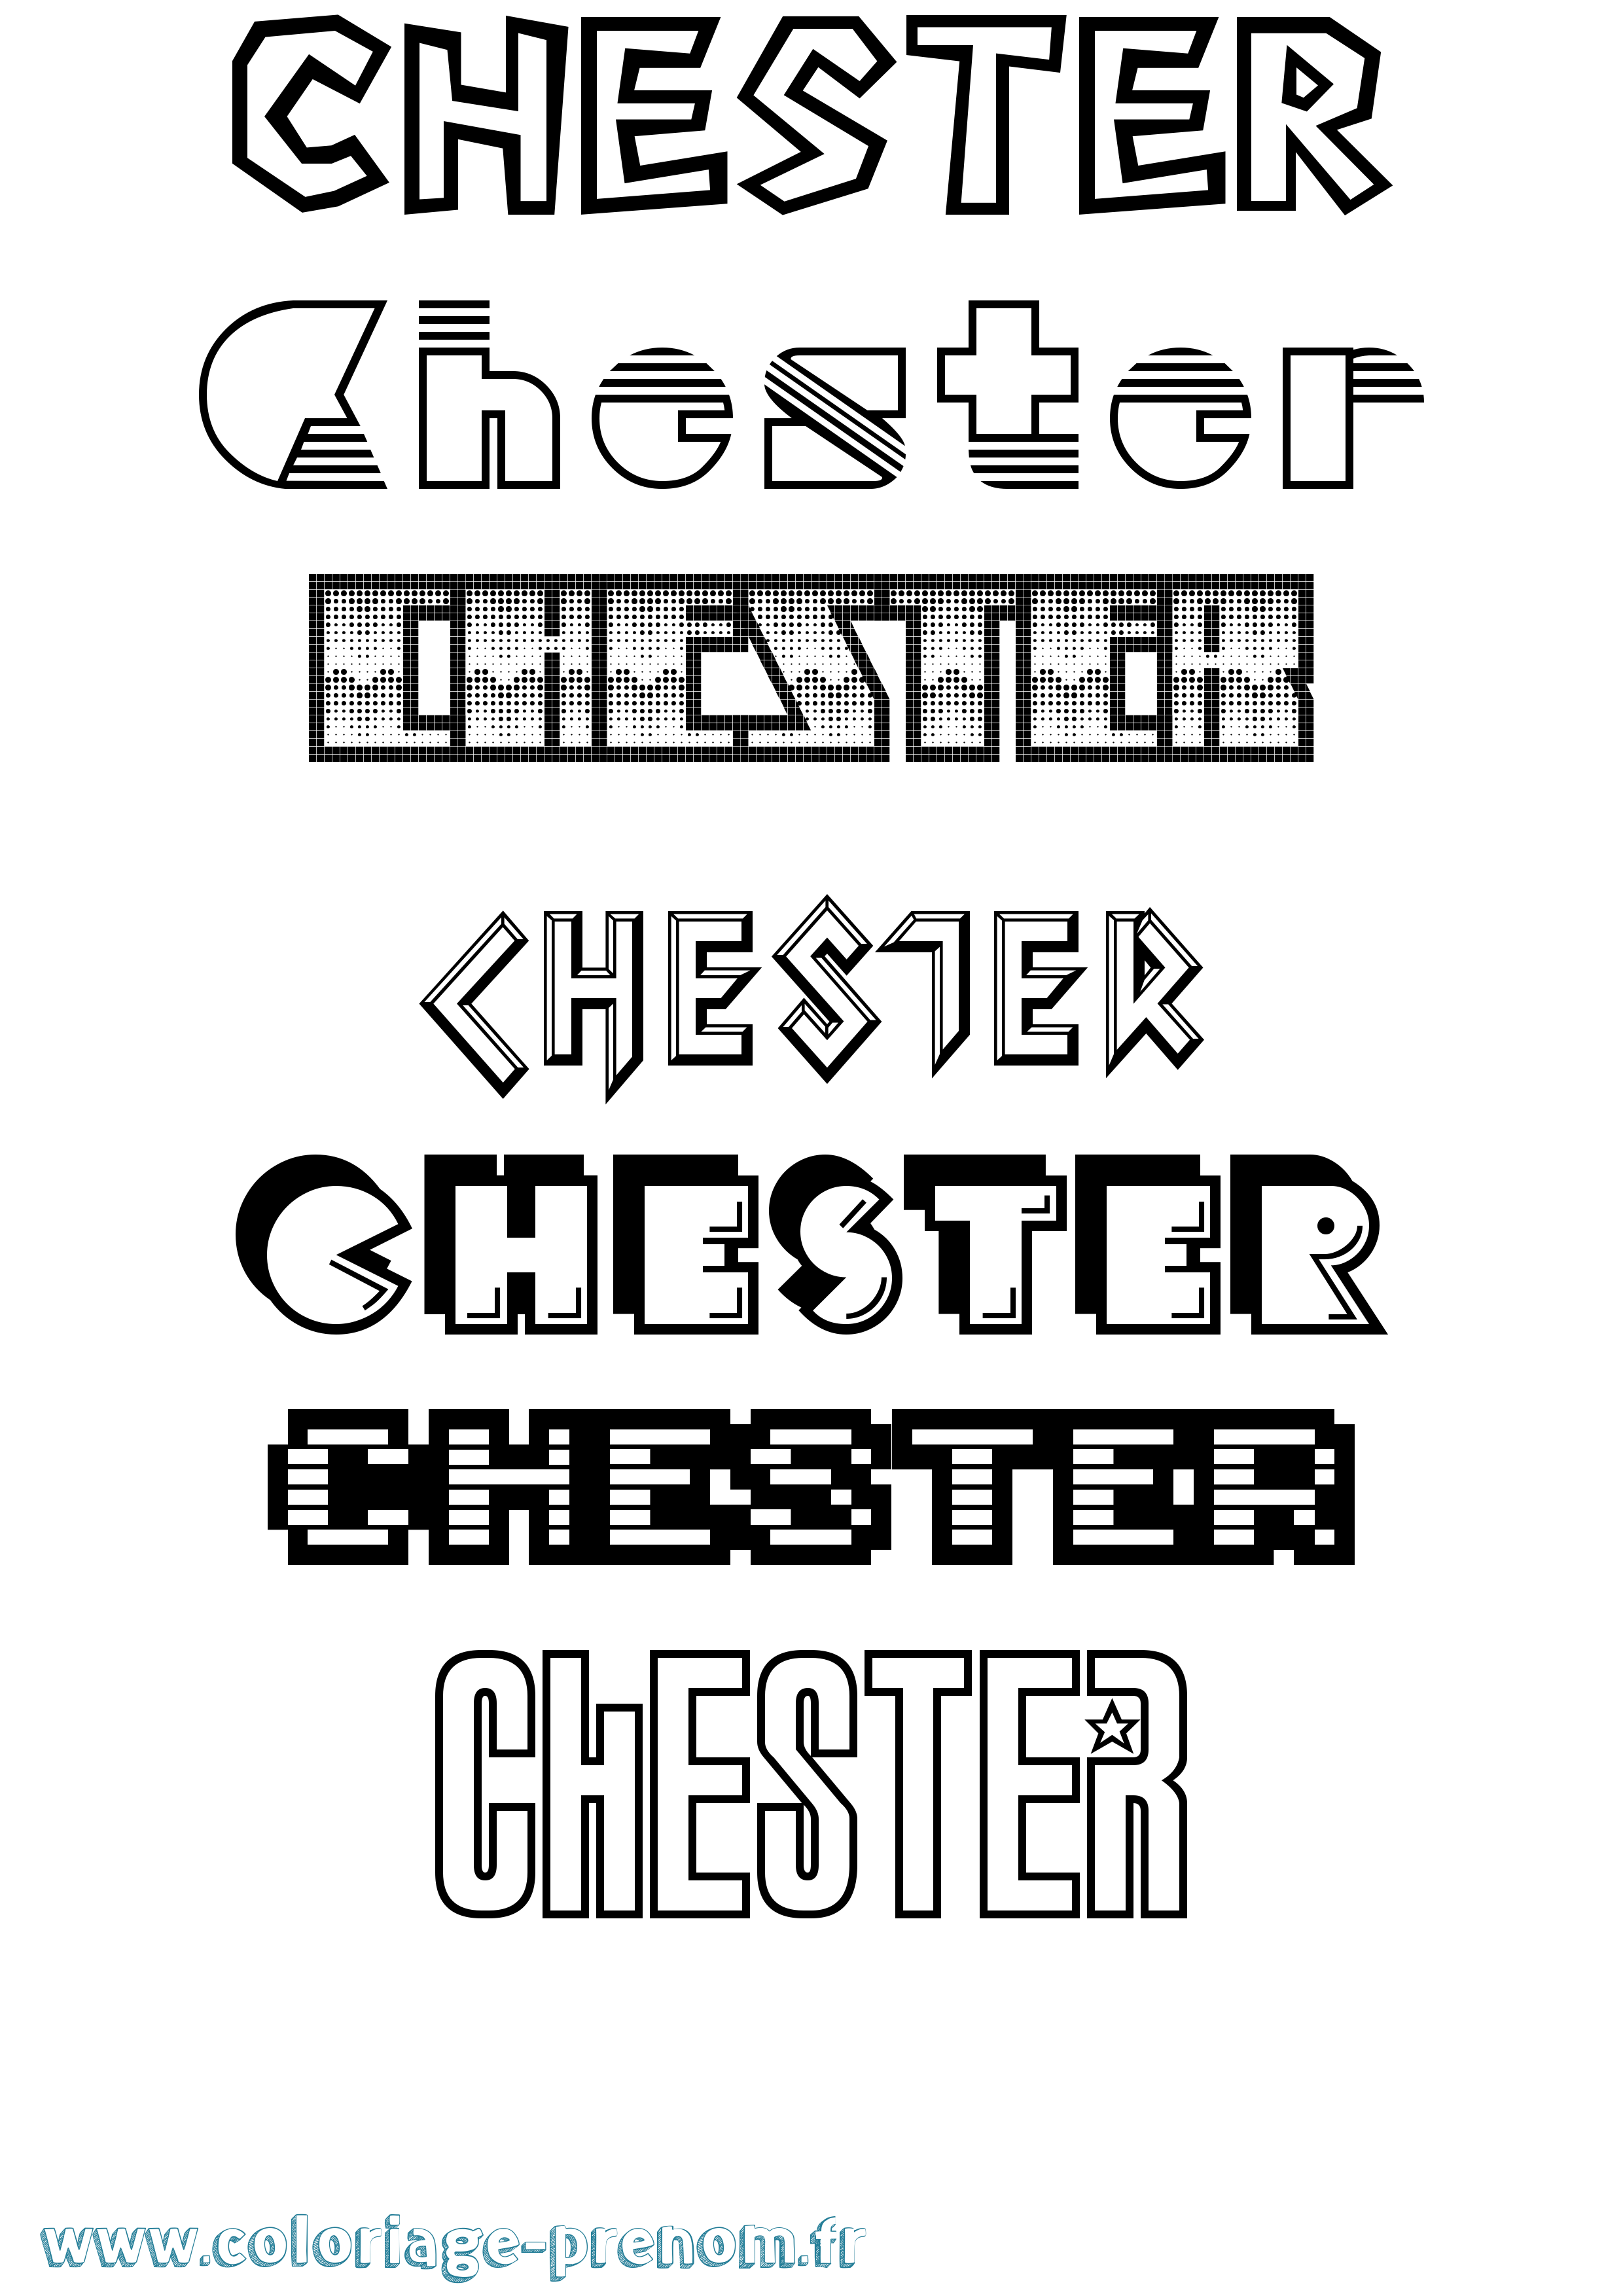 Coloriage prénom Chester Jeux Vidéos